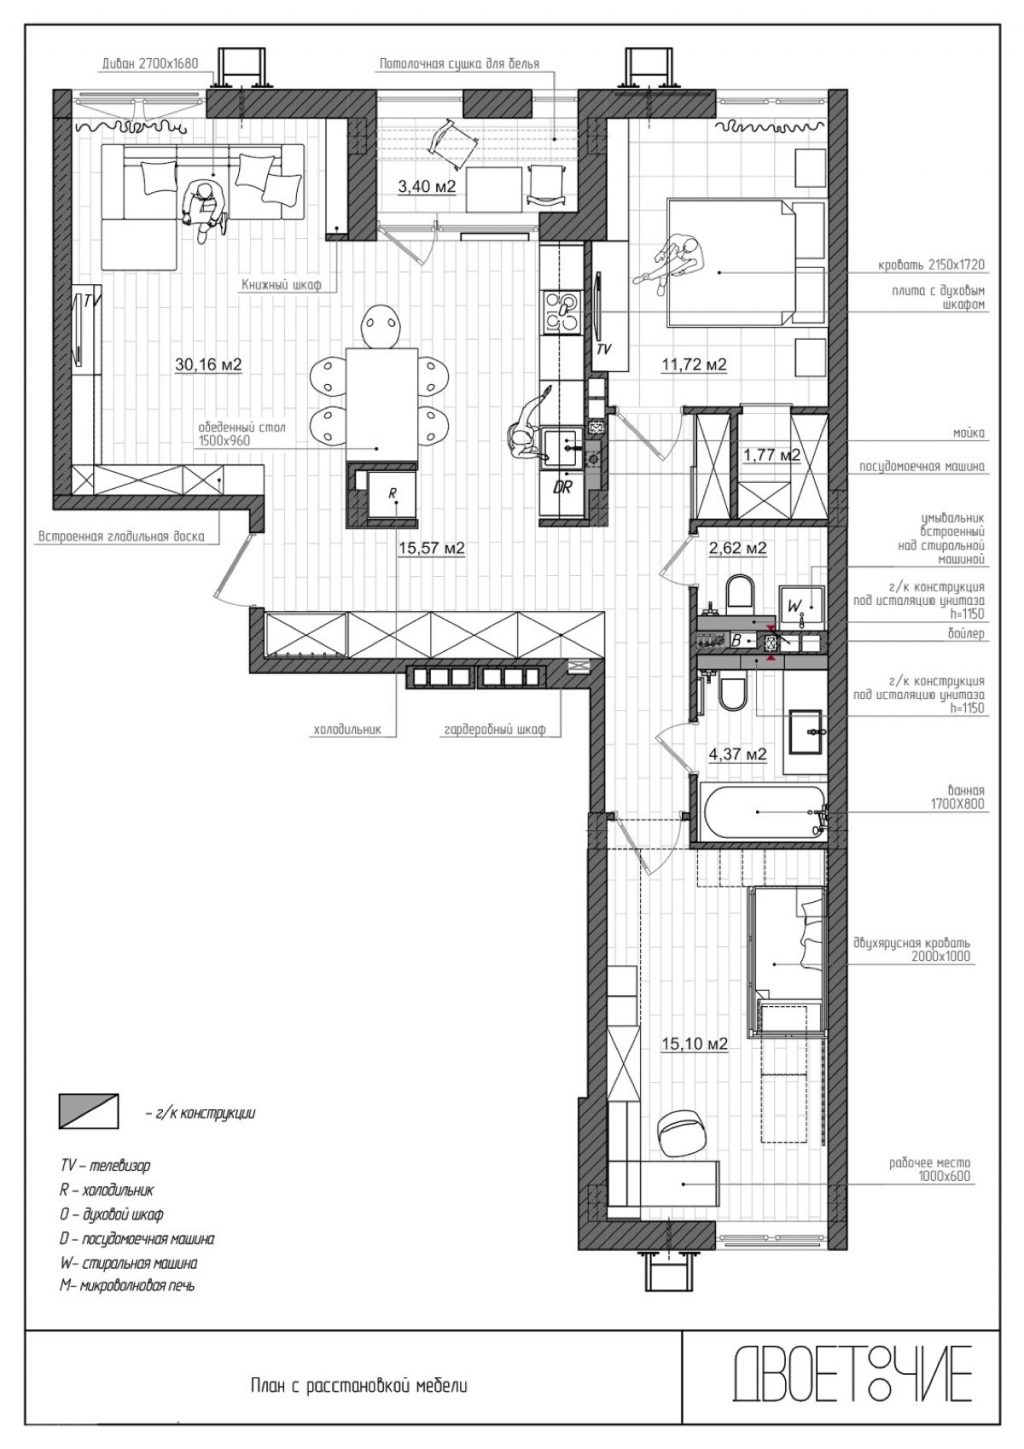 80 square meter home floor plan Interior Design Ideas